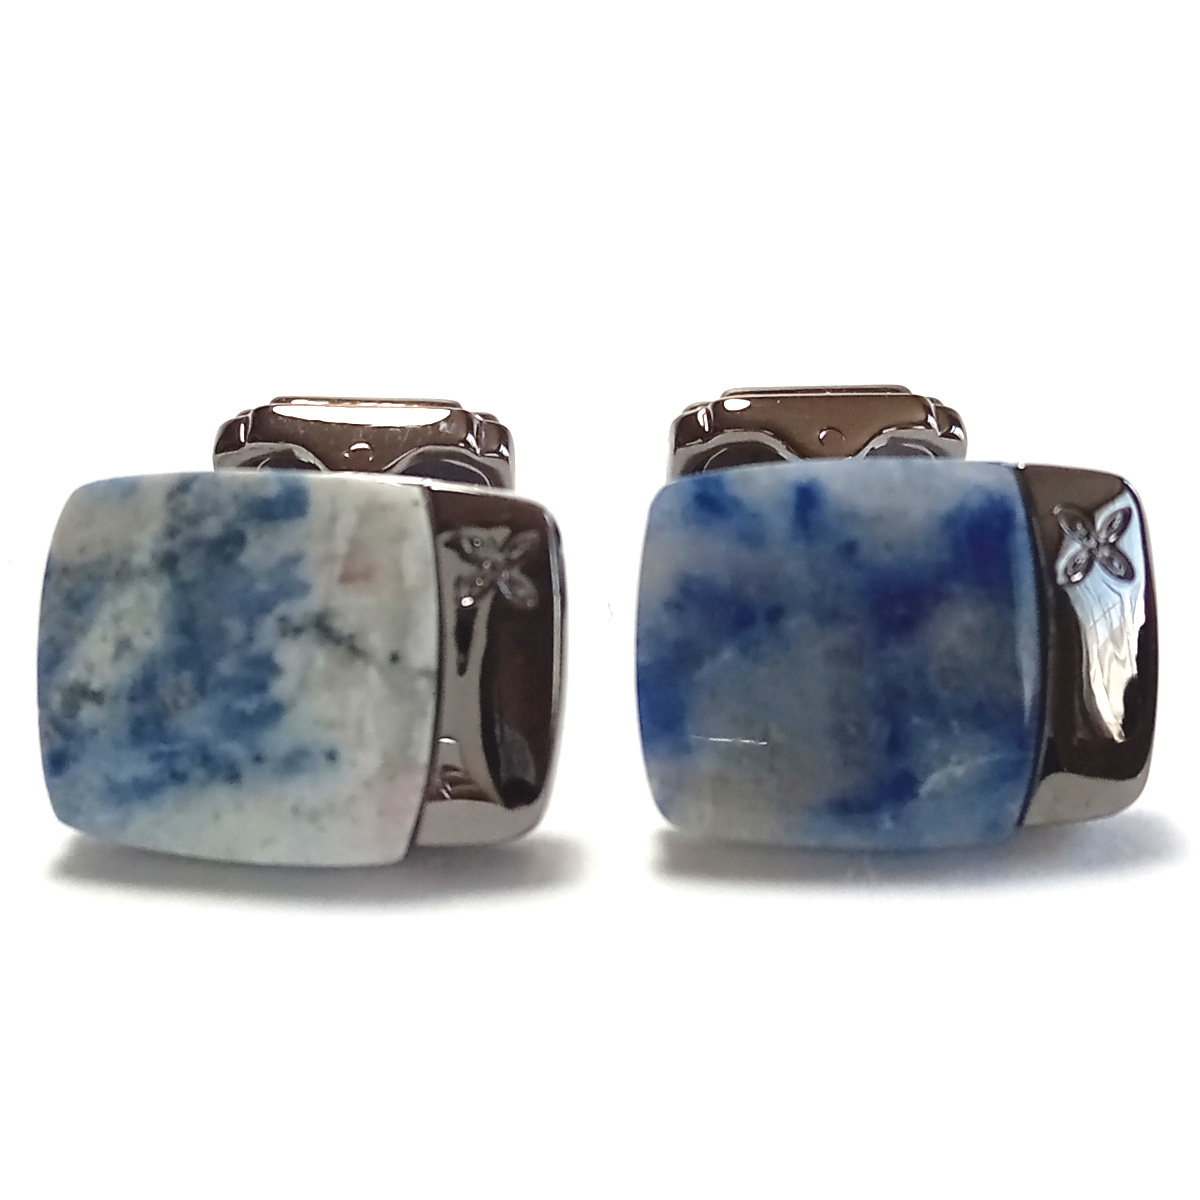 [tsc47]THOMPSON ton pson cuffs cuff links gunmetal × blue black / blue / white marble lapis lazuli lapis lazuli Power Stone 